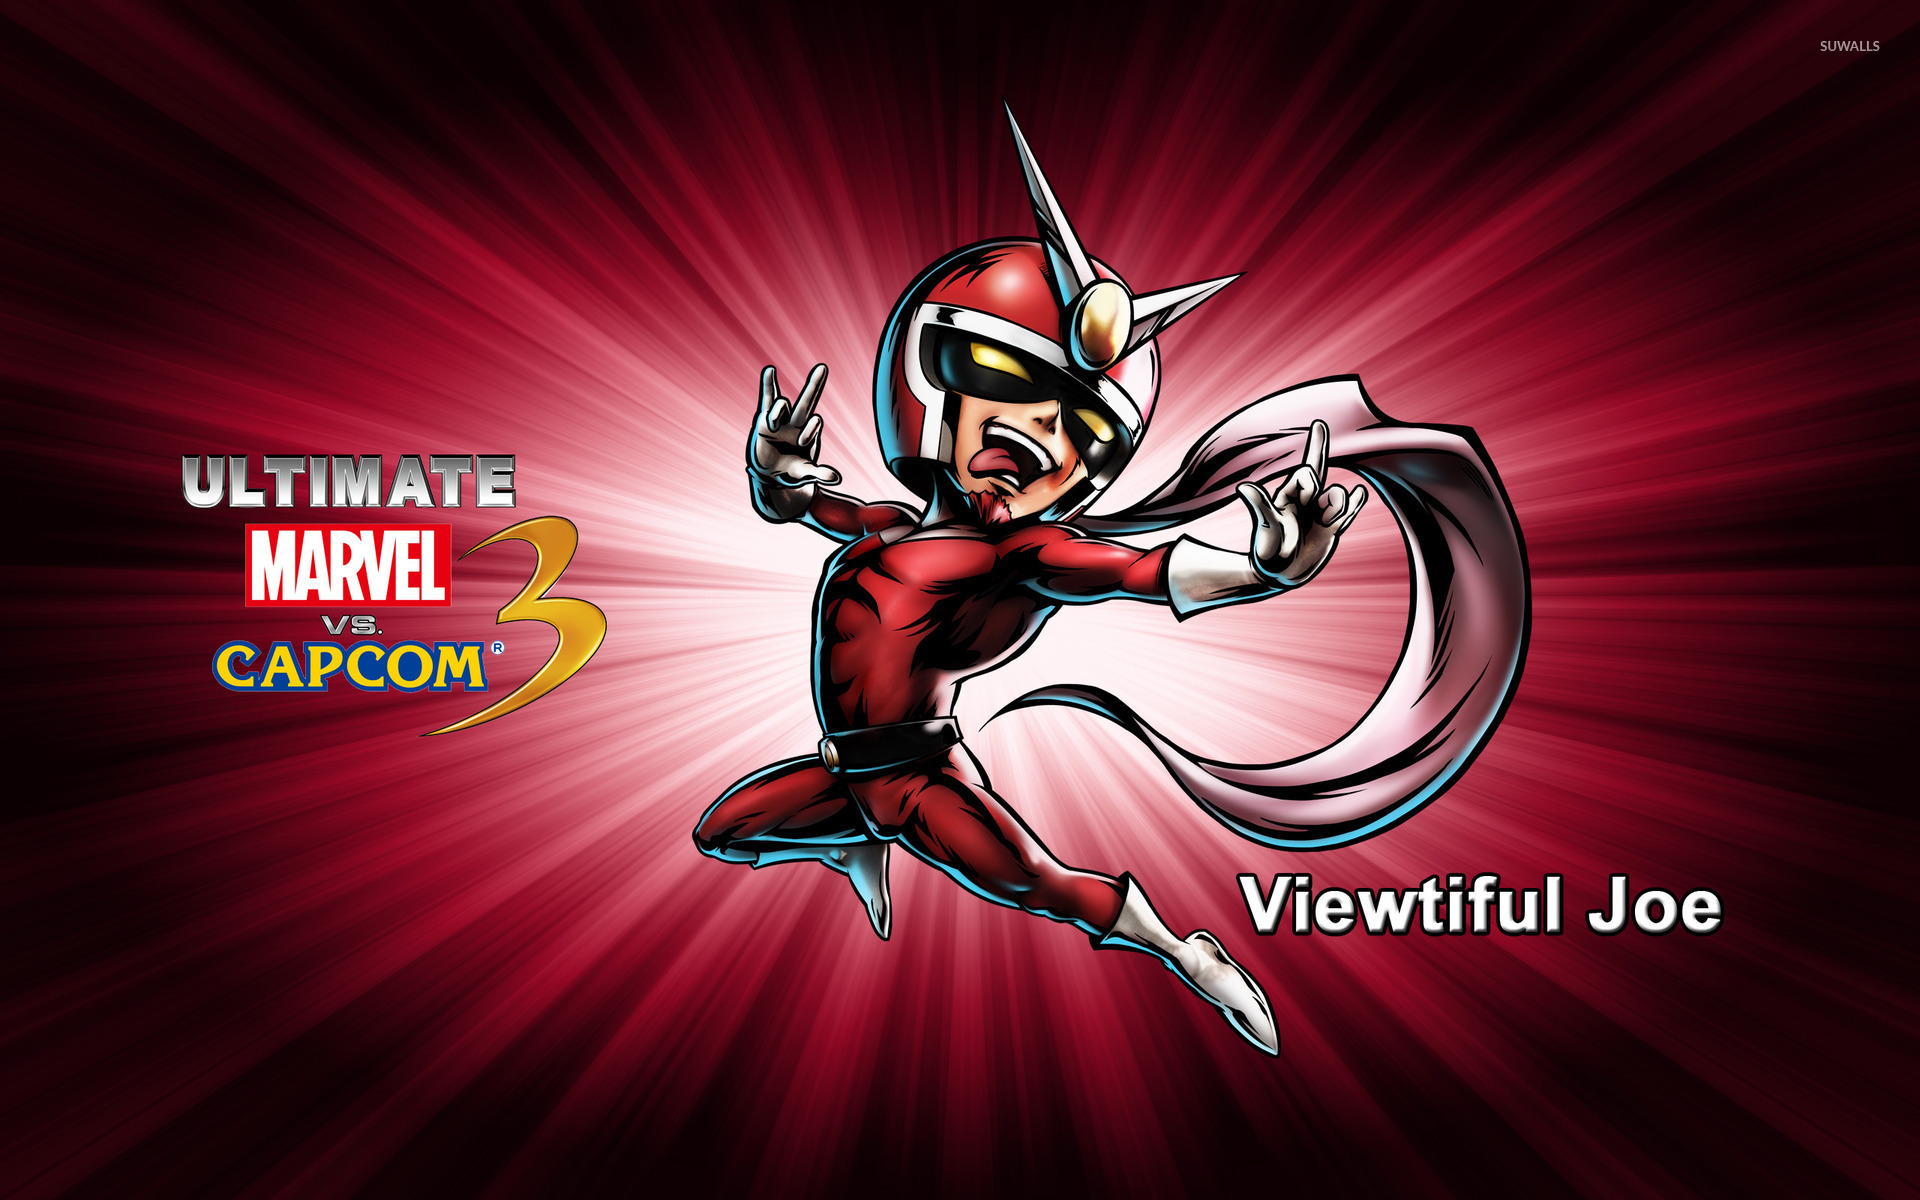 Viewtiful Joe - Ultimate Marvel vs. Capcom 3 wallpaper - Game ...